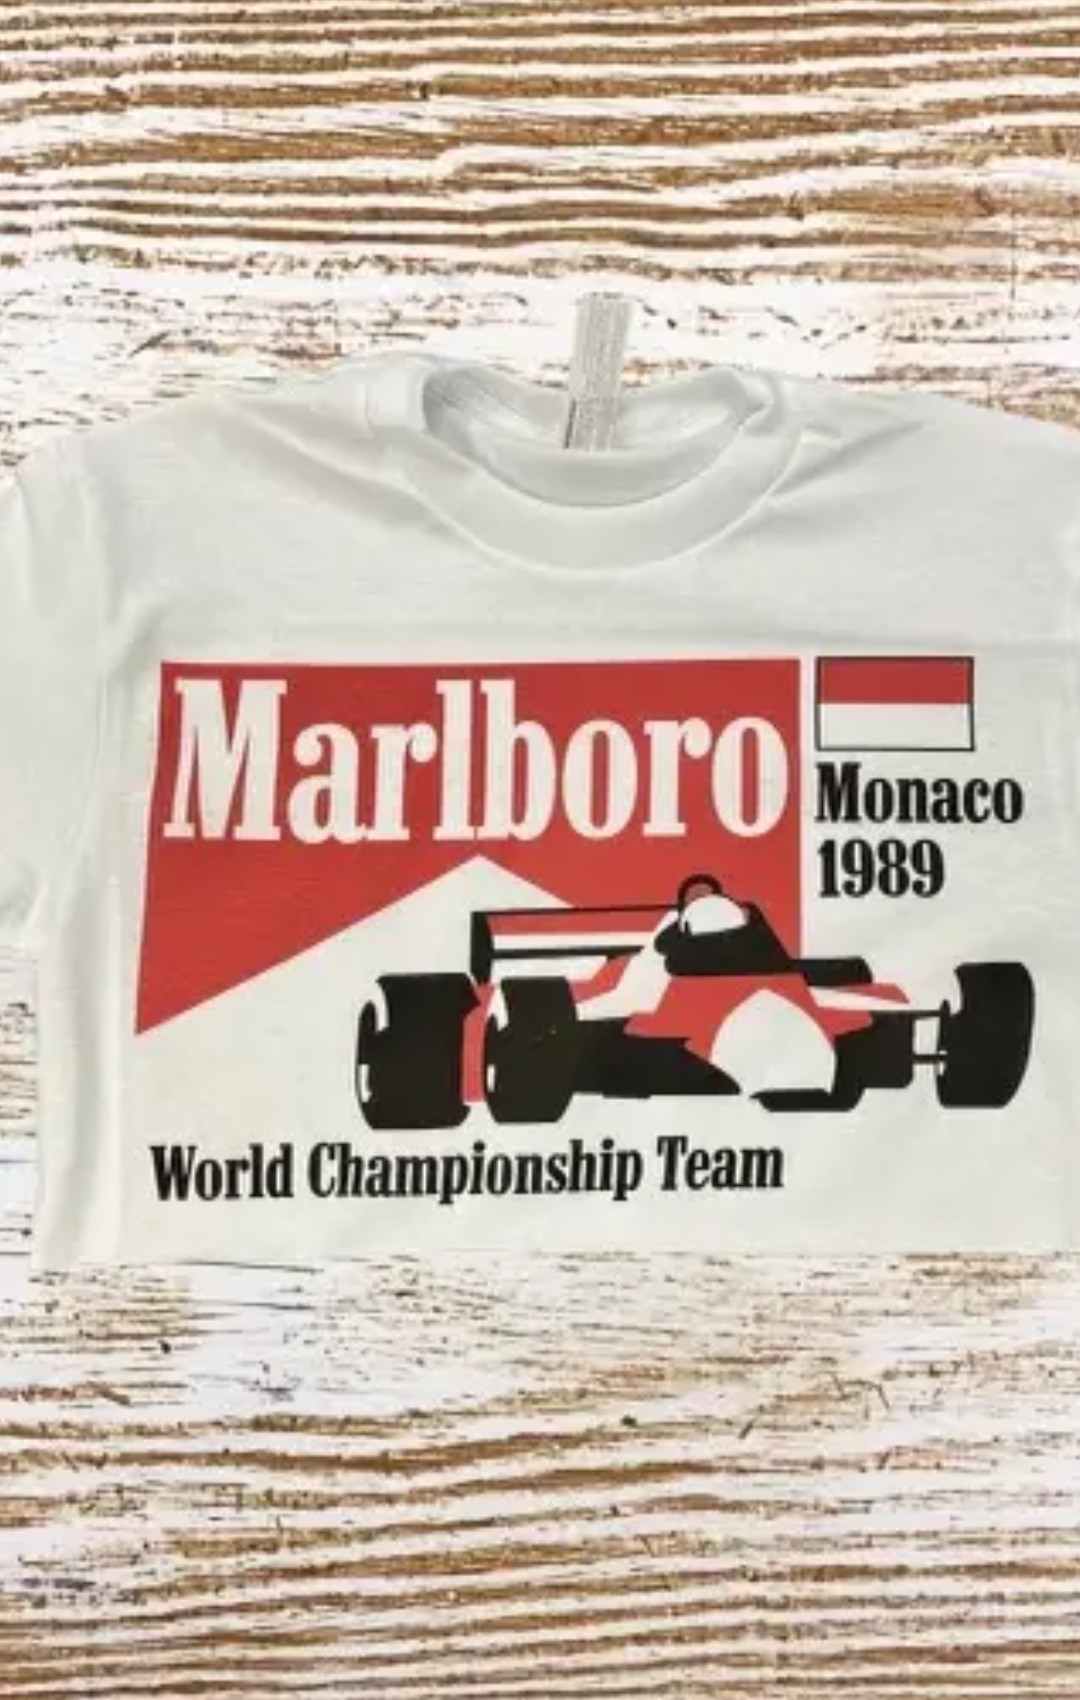 Marlboro Monaco 1989 Crop